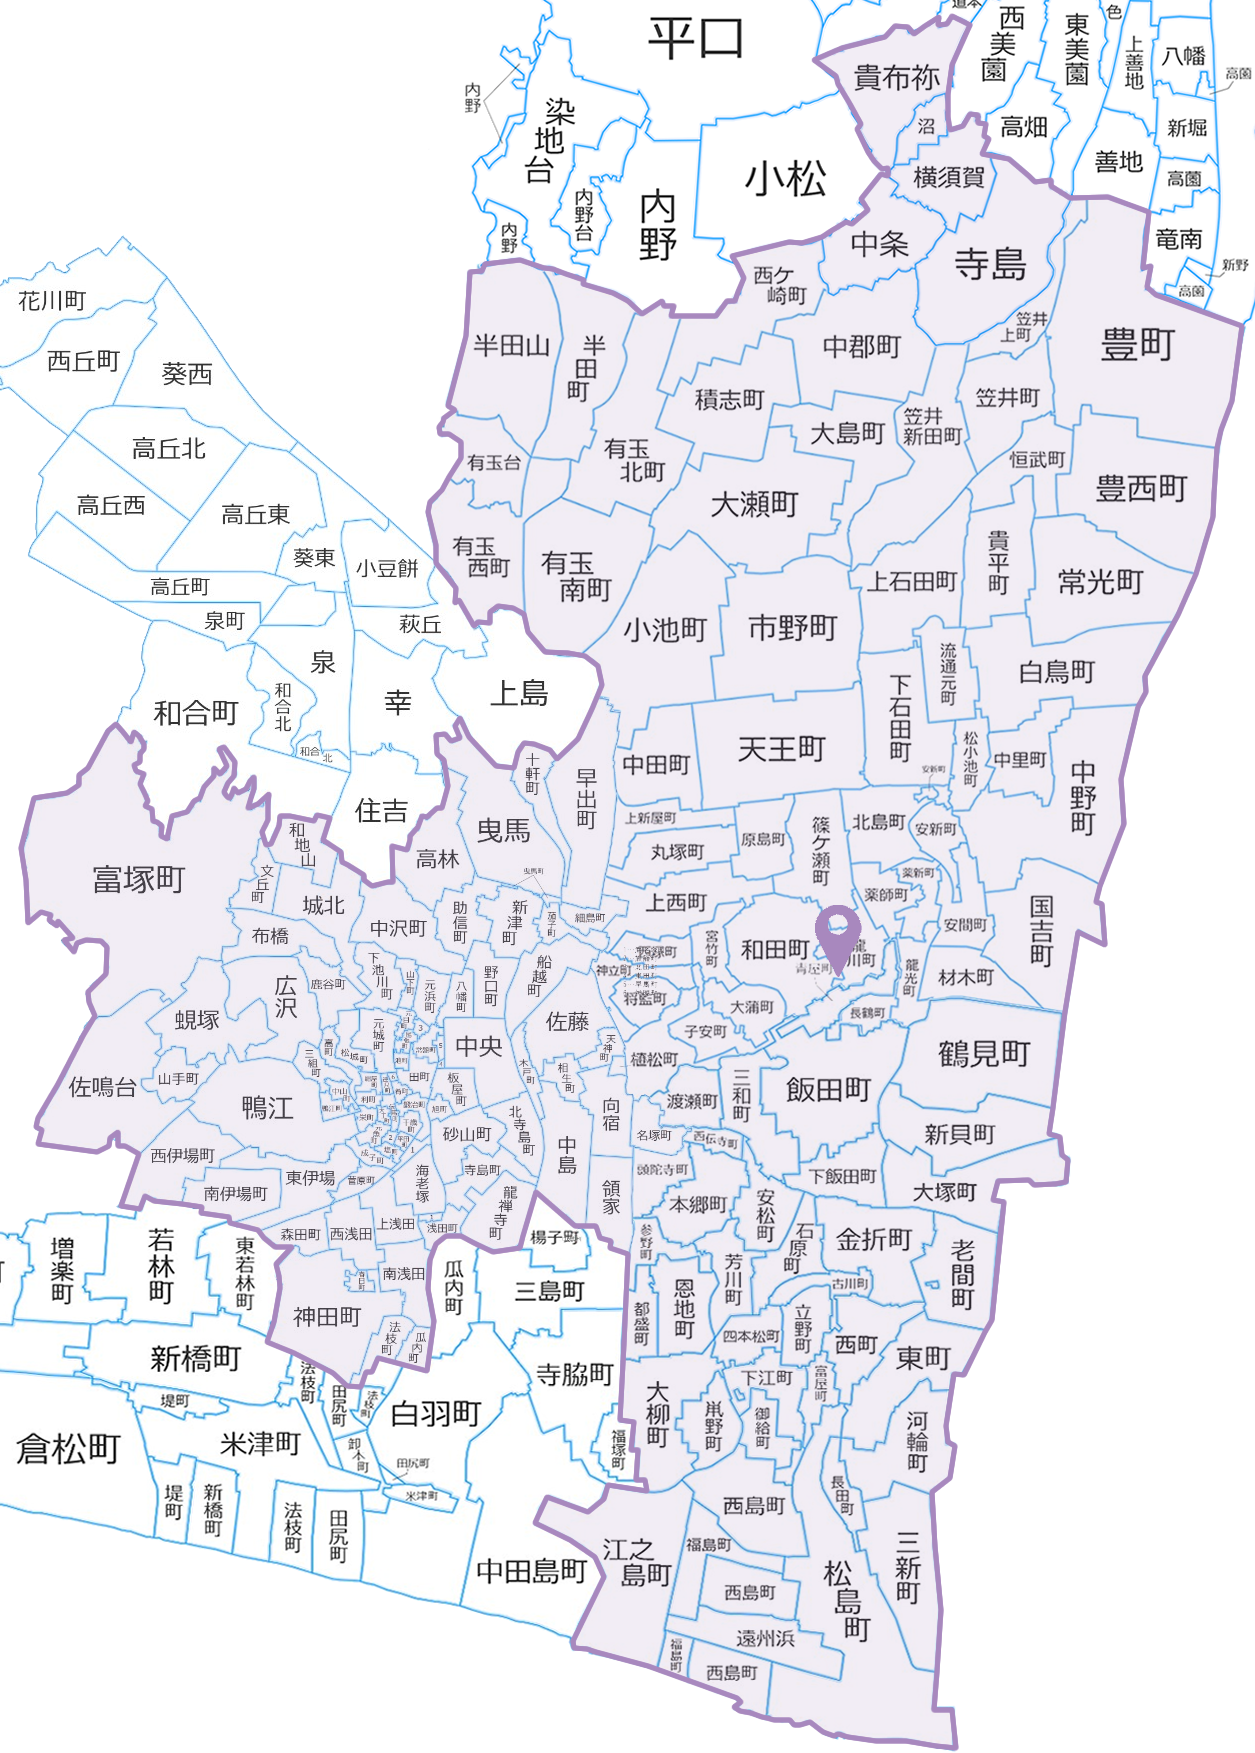 訪問リハビリサービス提供範囲地図（浜松地域）